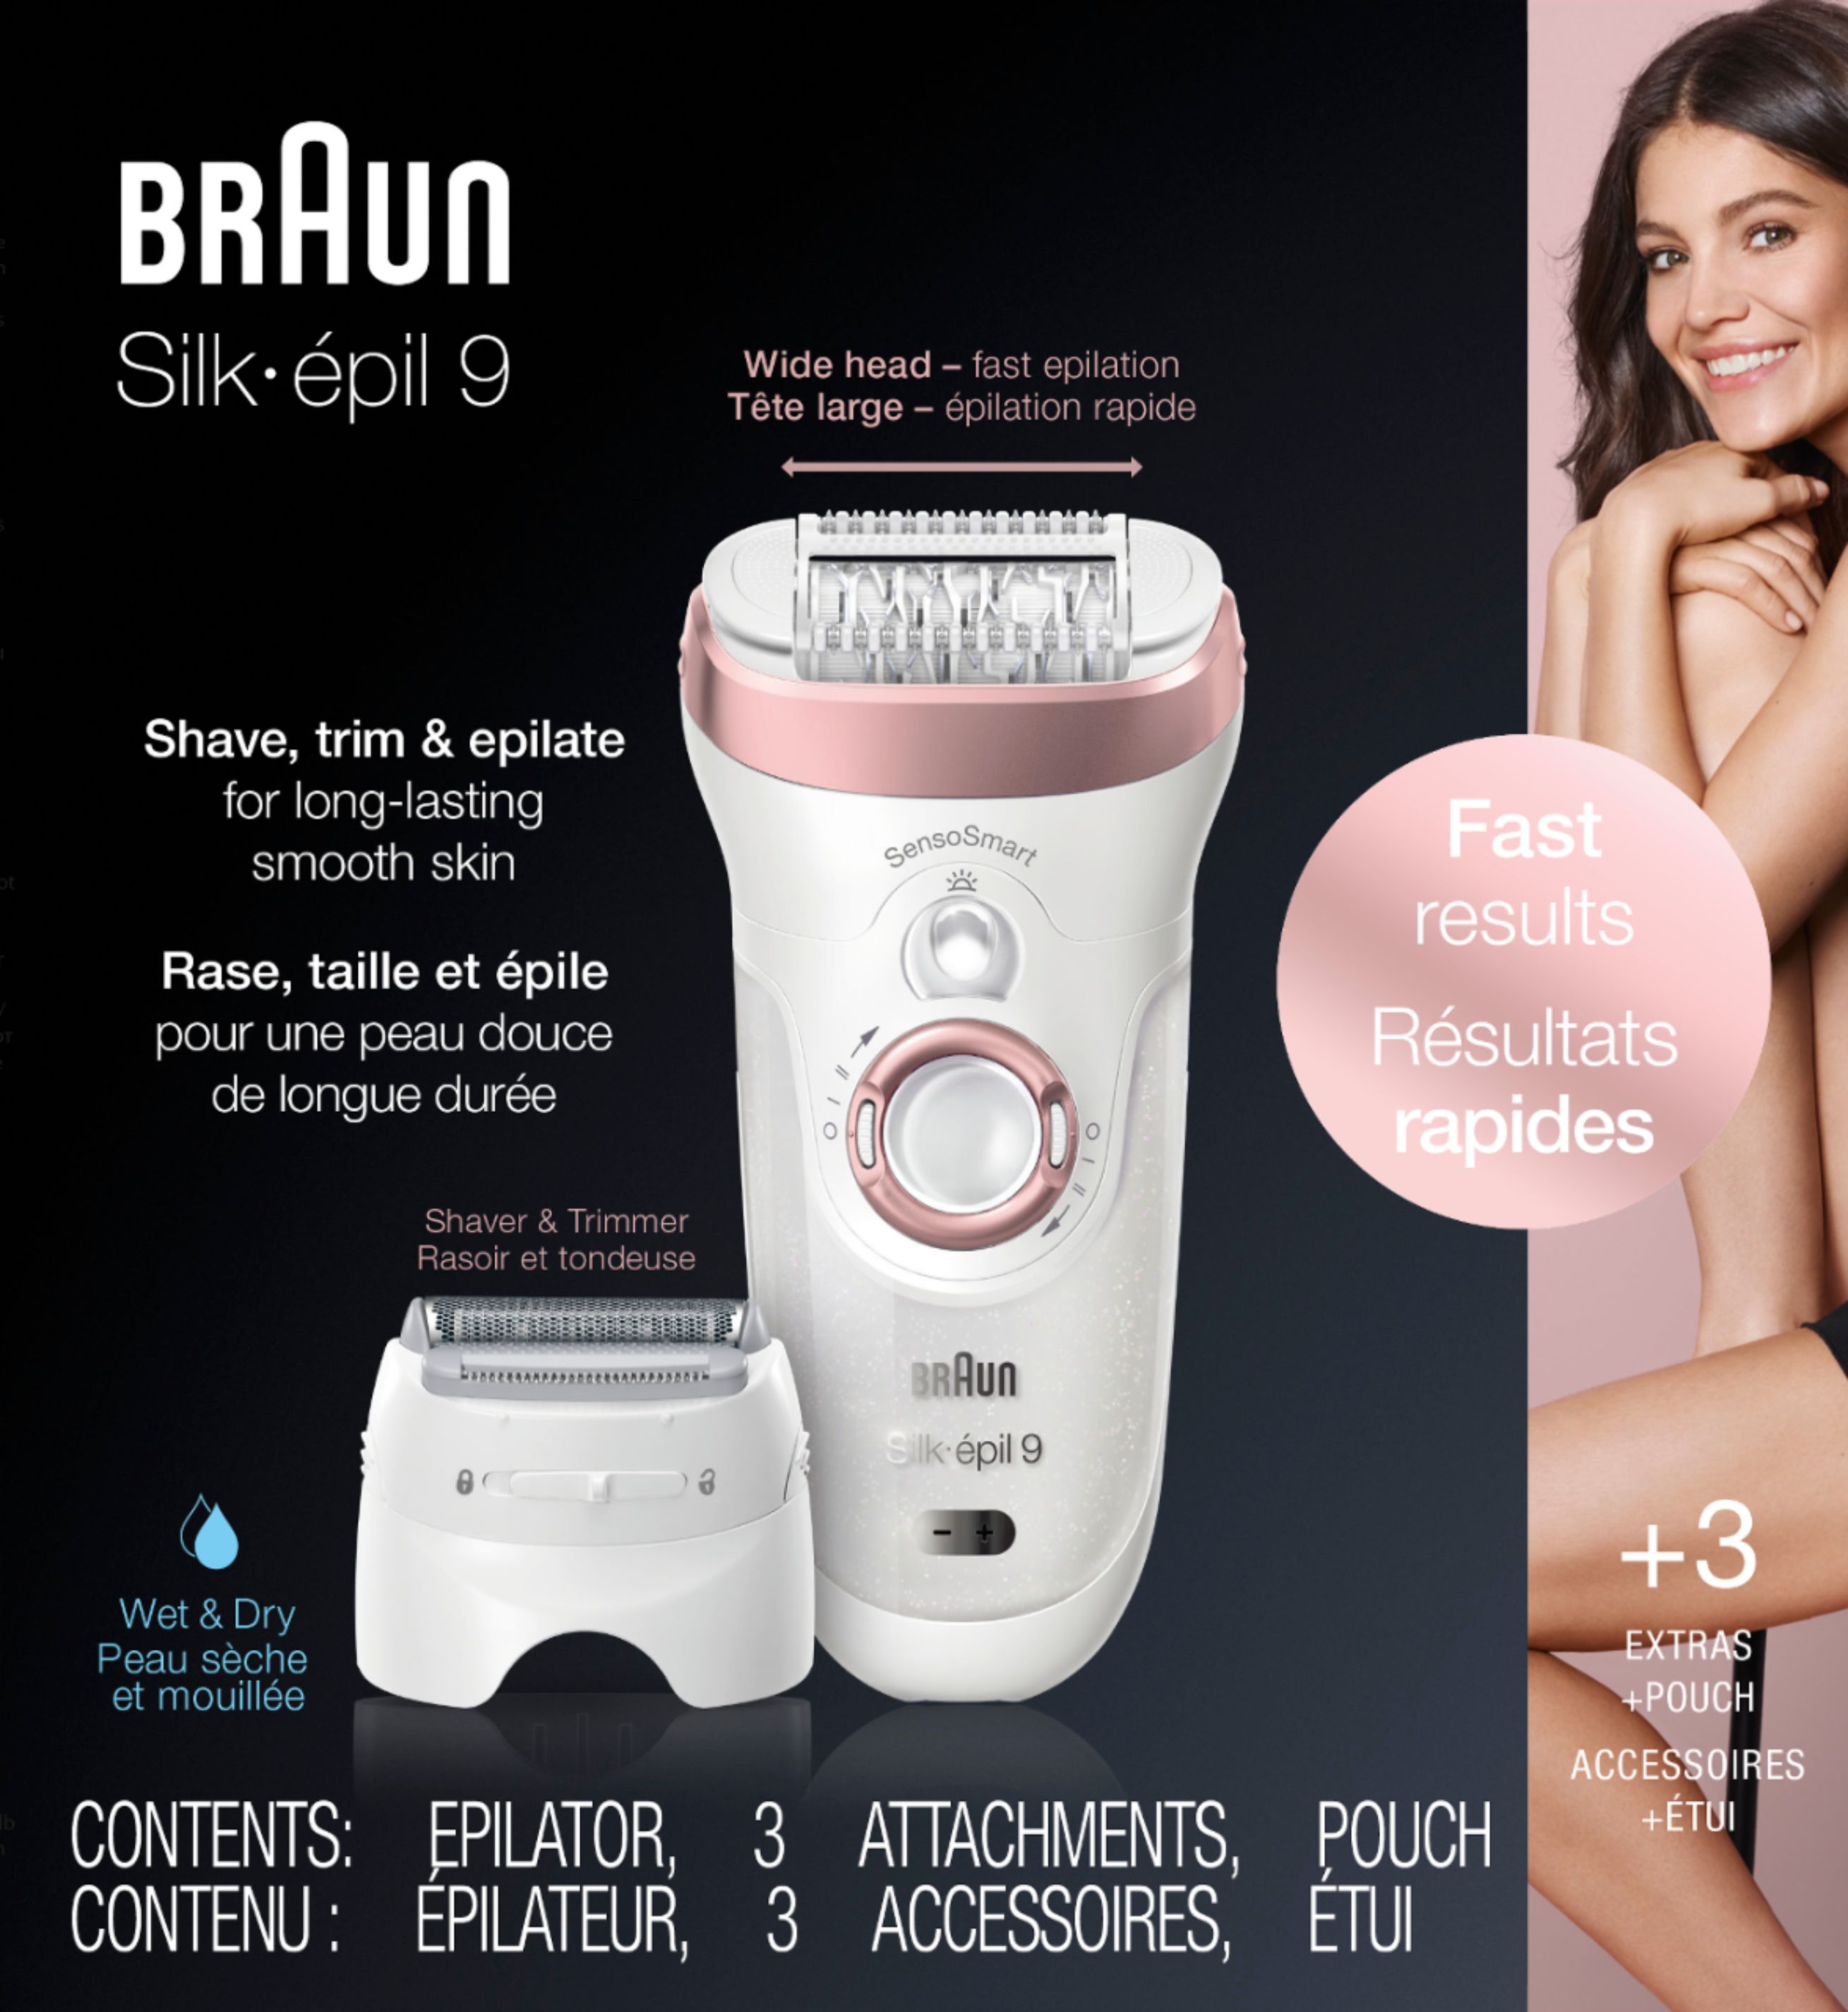 Hair Removal, Braun Silk-epil 9-720, Epilator for women, Shav